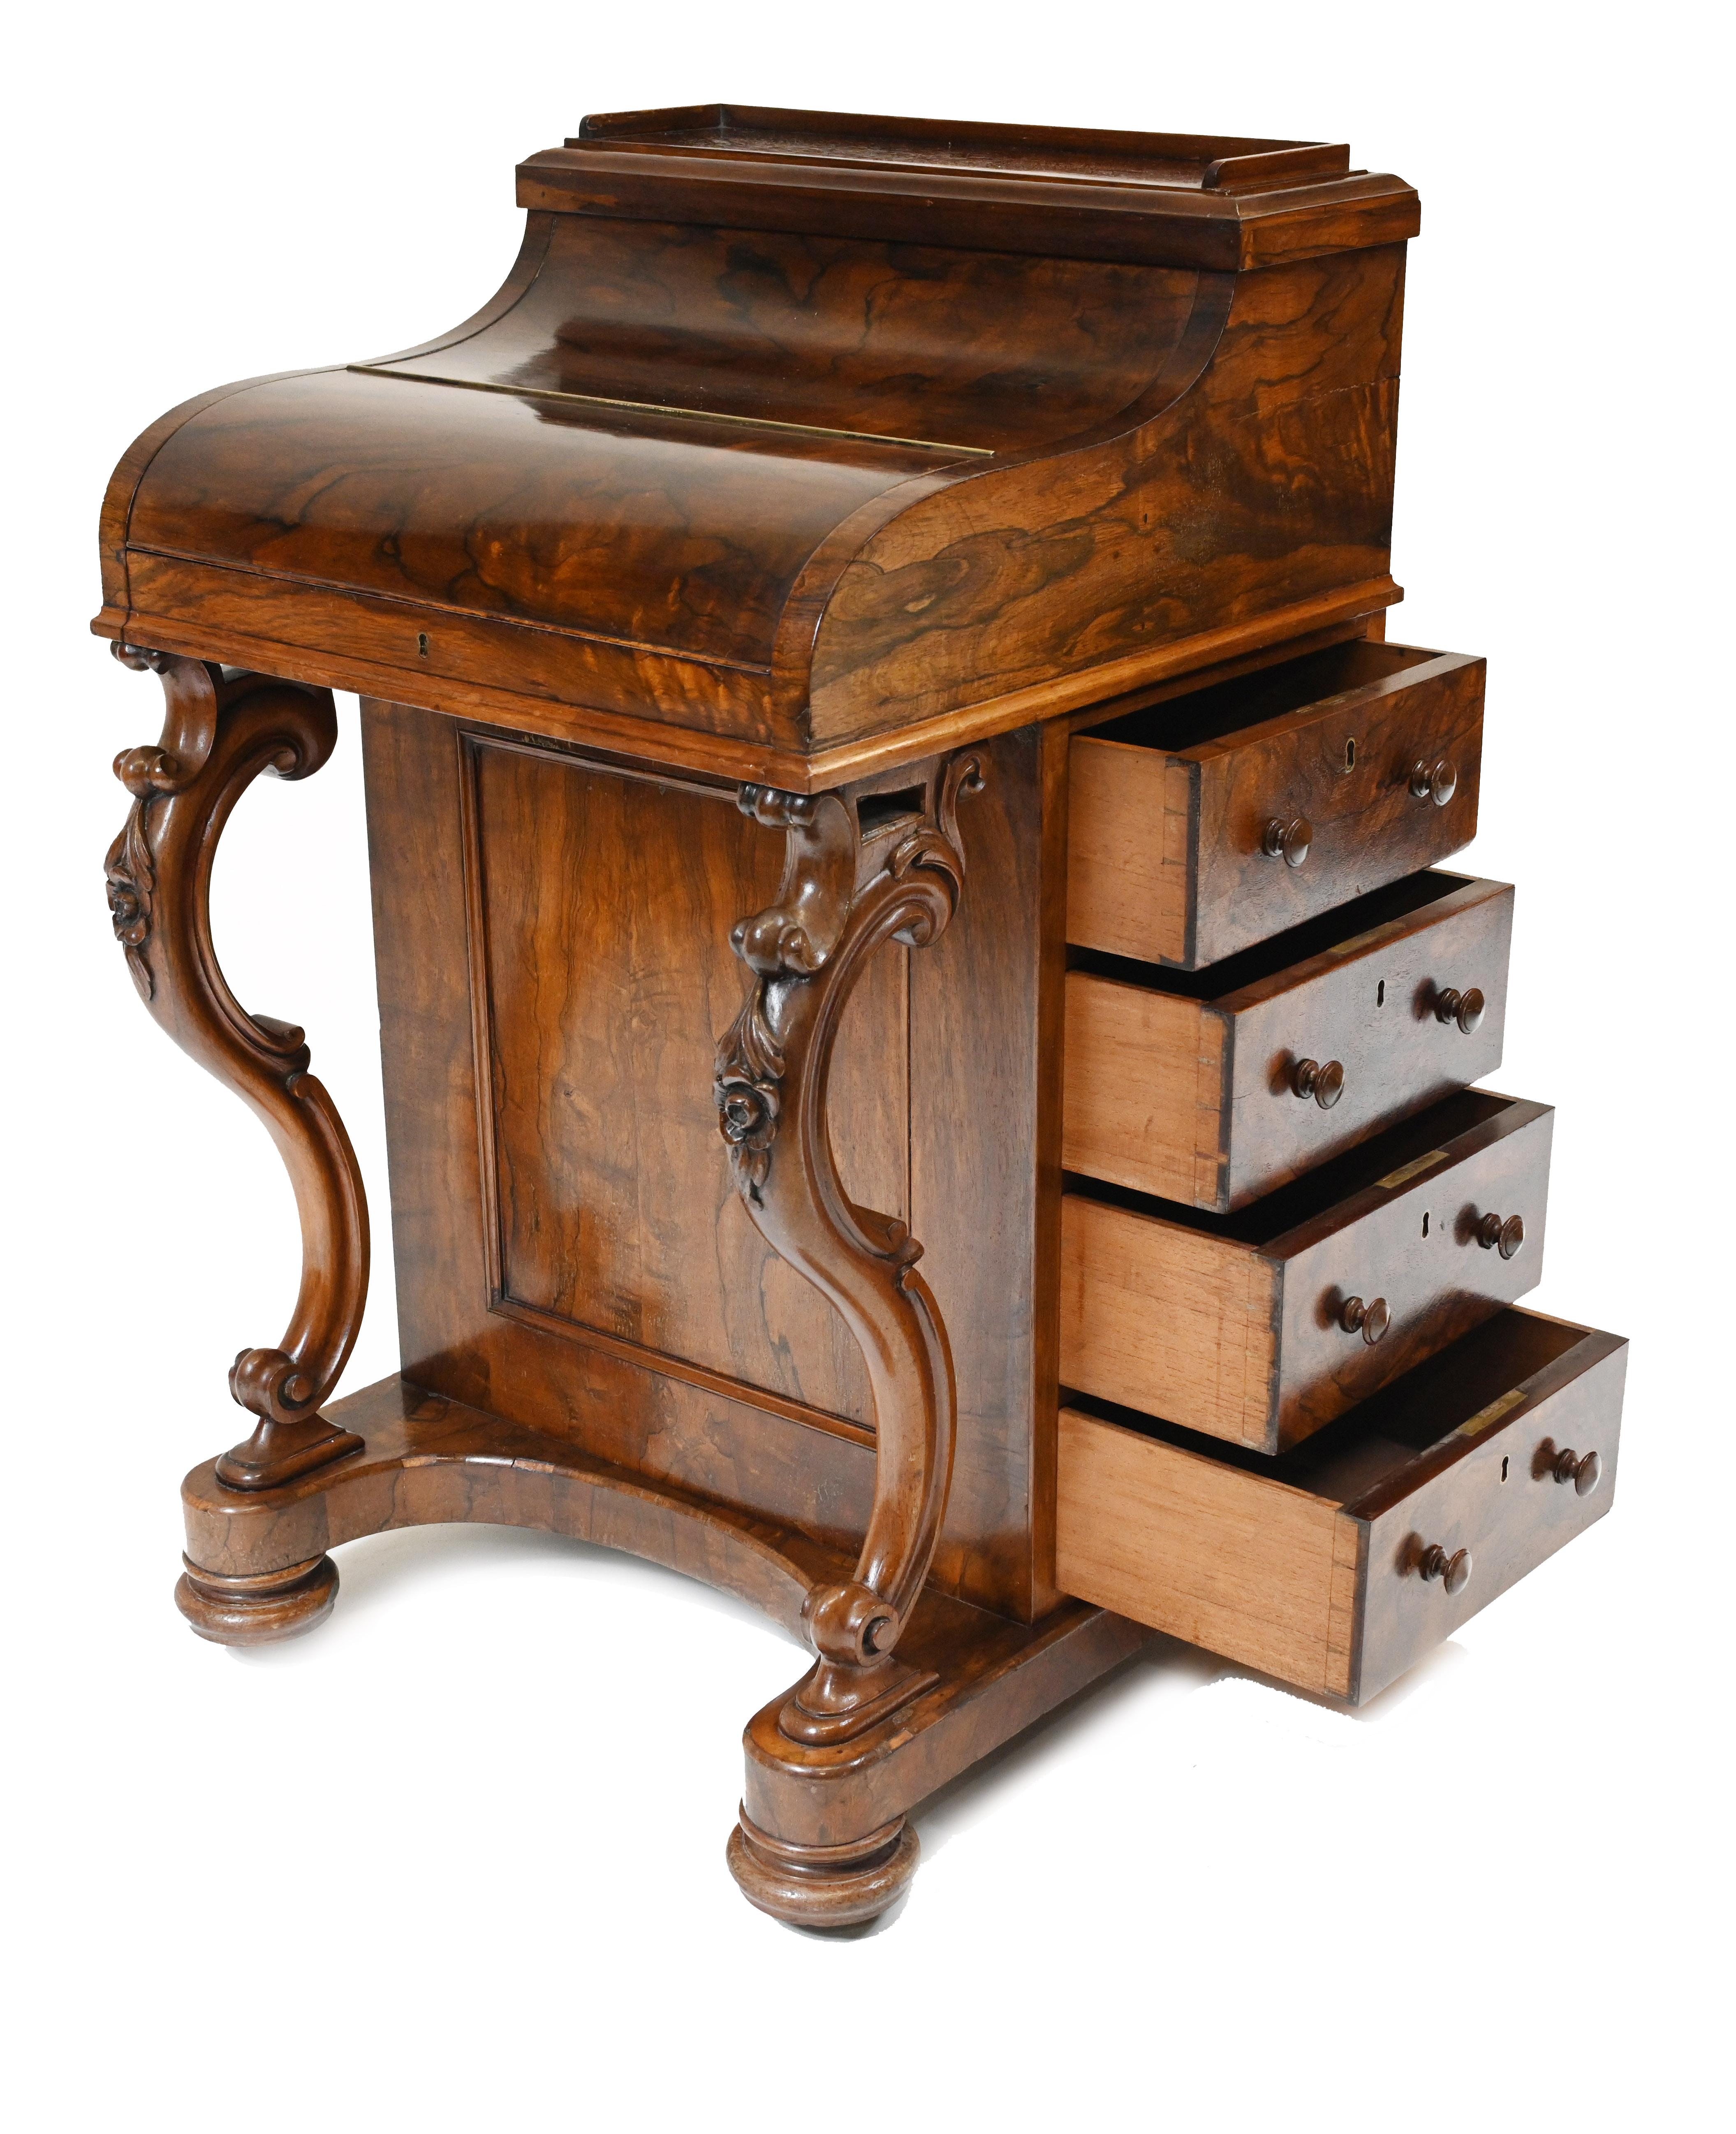 Rosewood Victorian Davenport Desk Pop Up Mechanism 1860